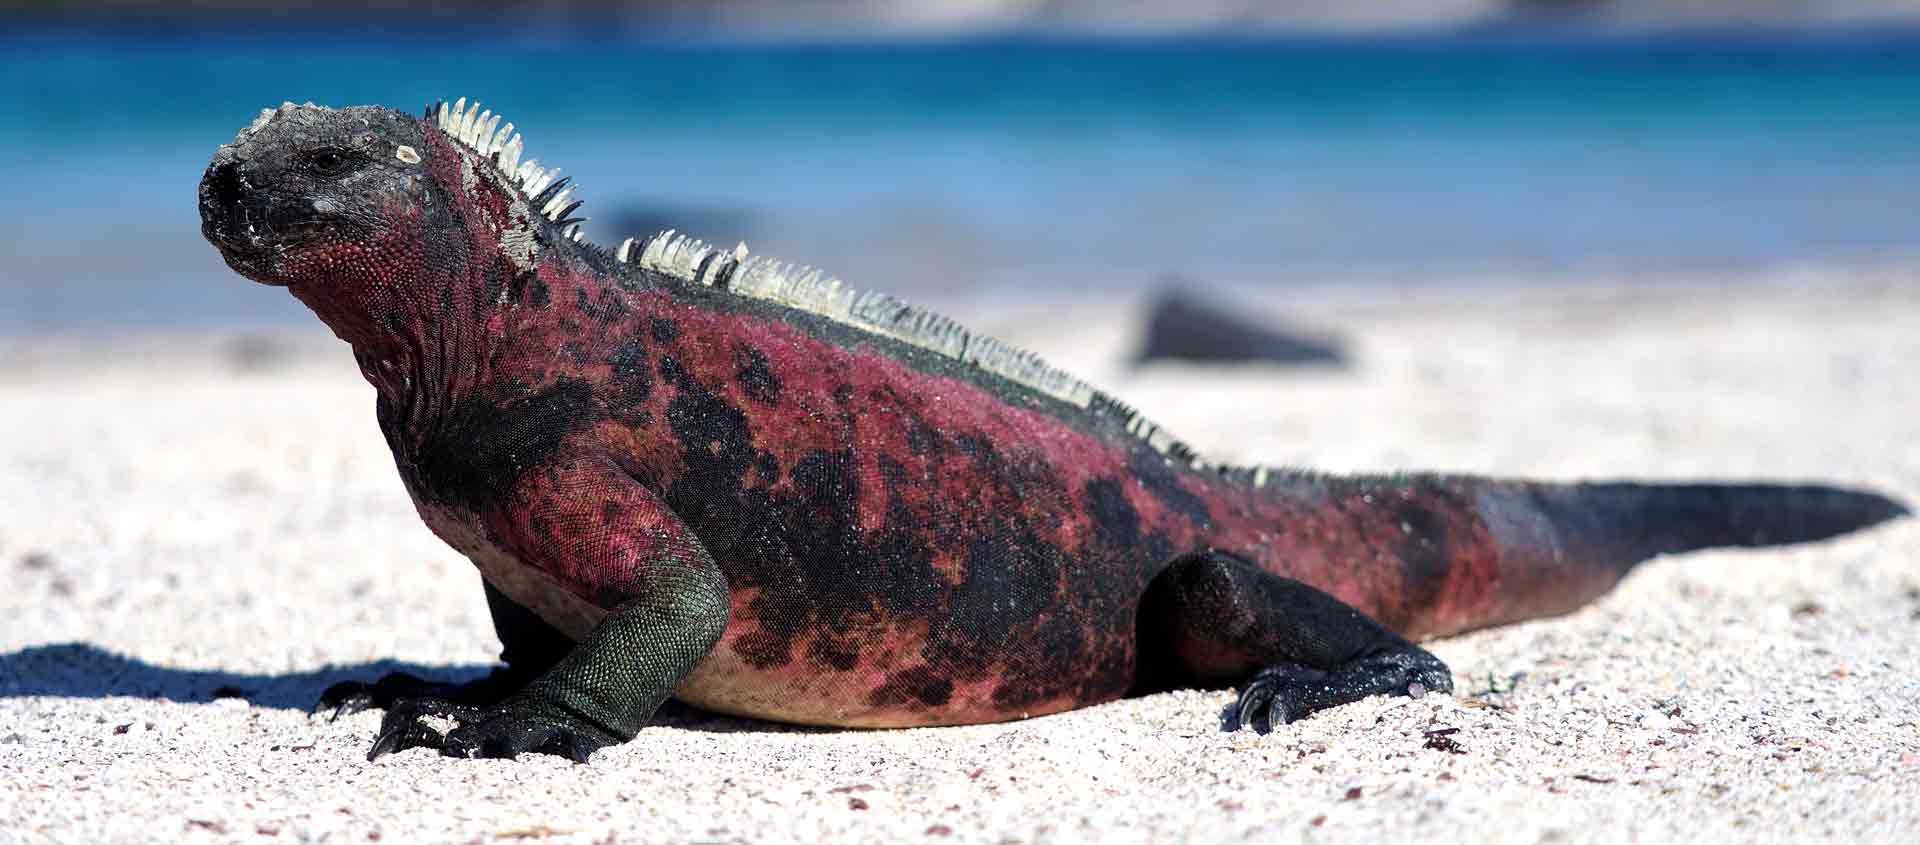 Galápagos Islands cruise image of Marine Iguana